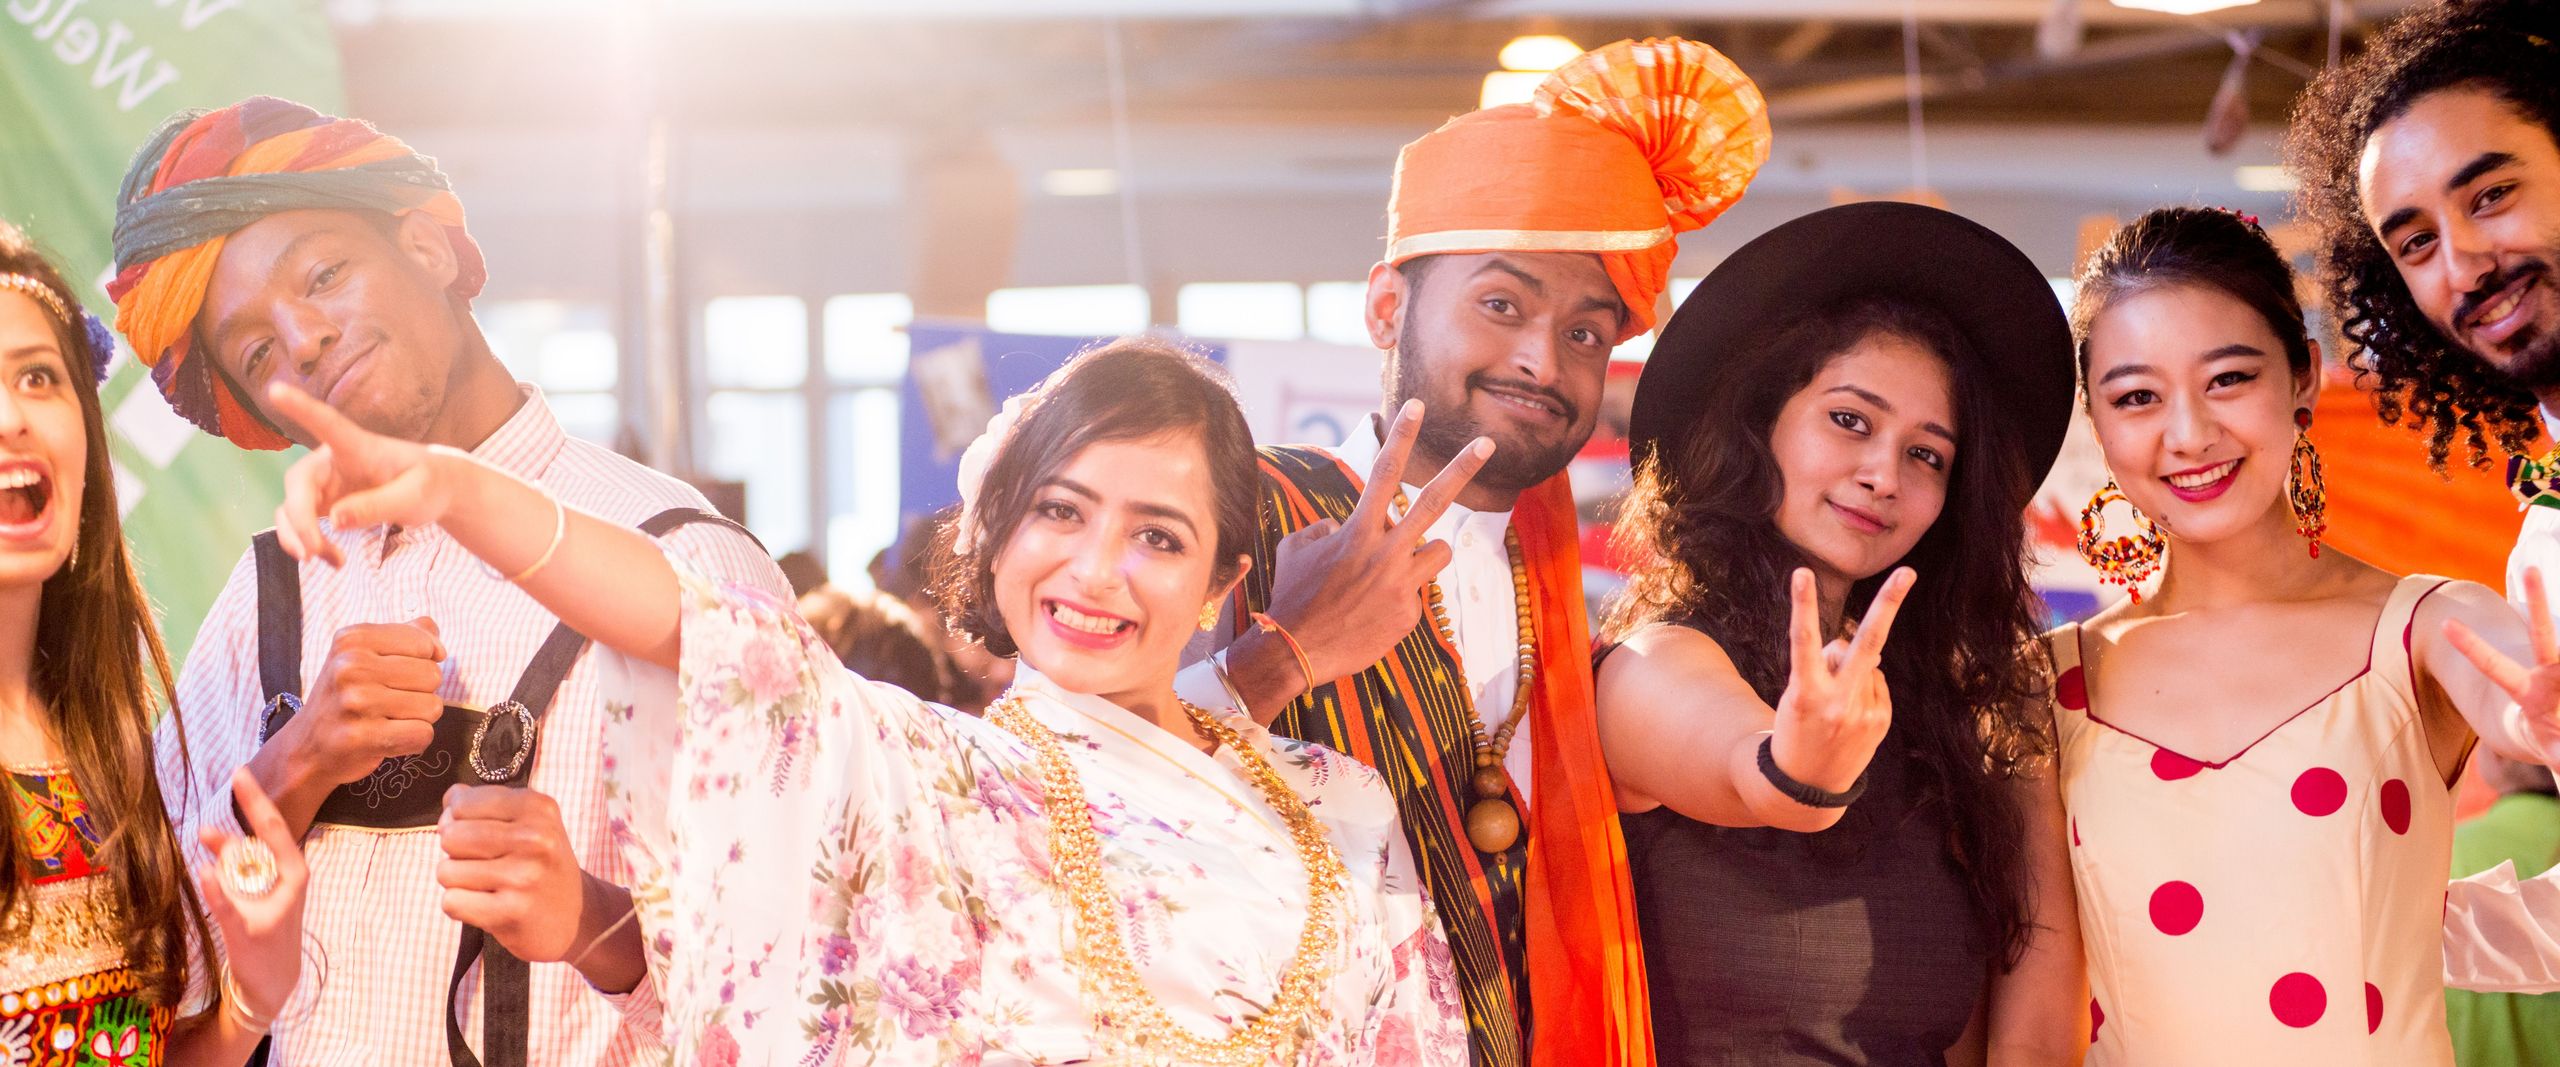 Auf dem Bild sind viele Studierende zu sehen, die traditionelle Kleidung aus unterschiedlichen Kulturen tragen. Alle zusammen befinden sich auf dem International Day 2016 der Hochschule Bremen.